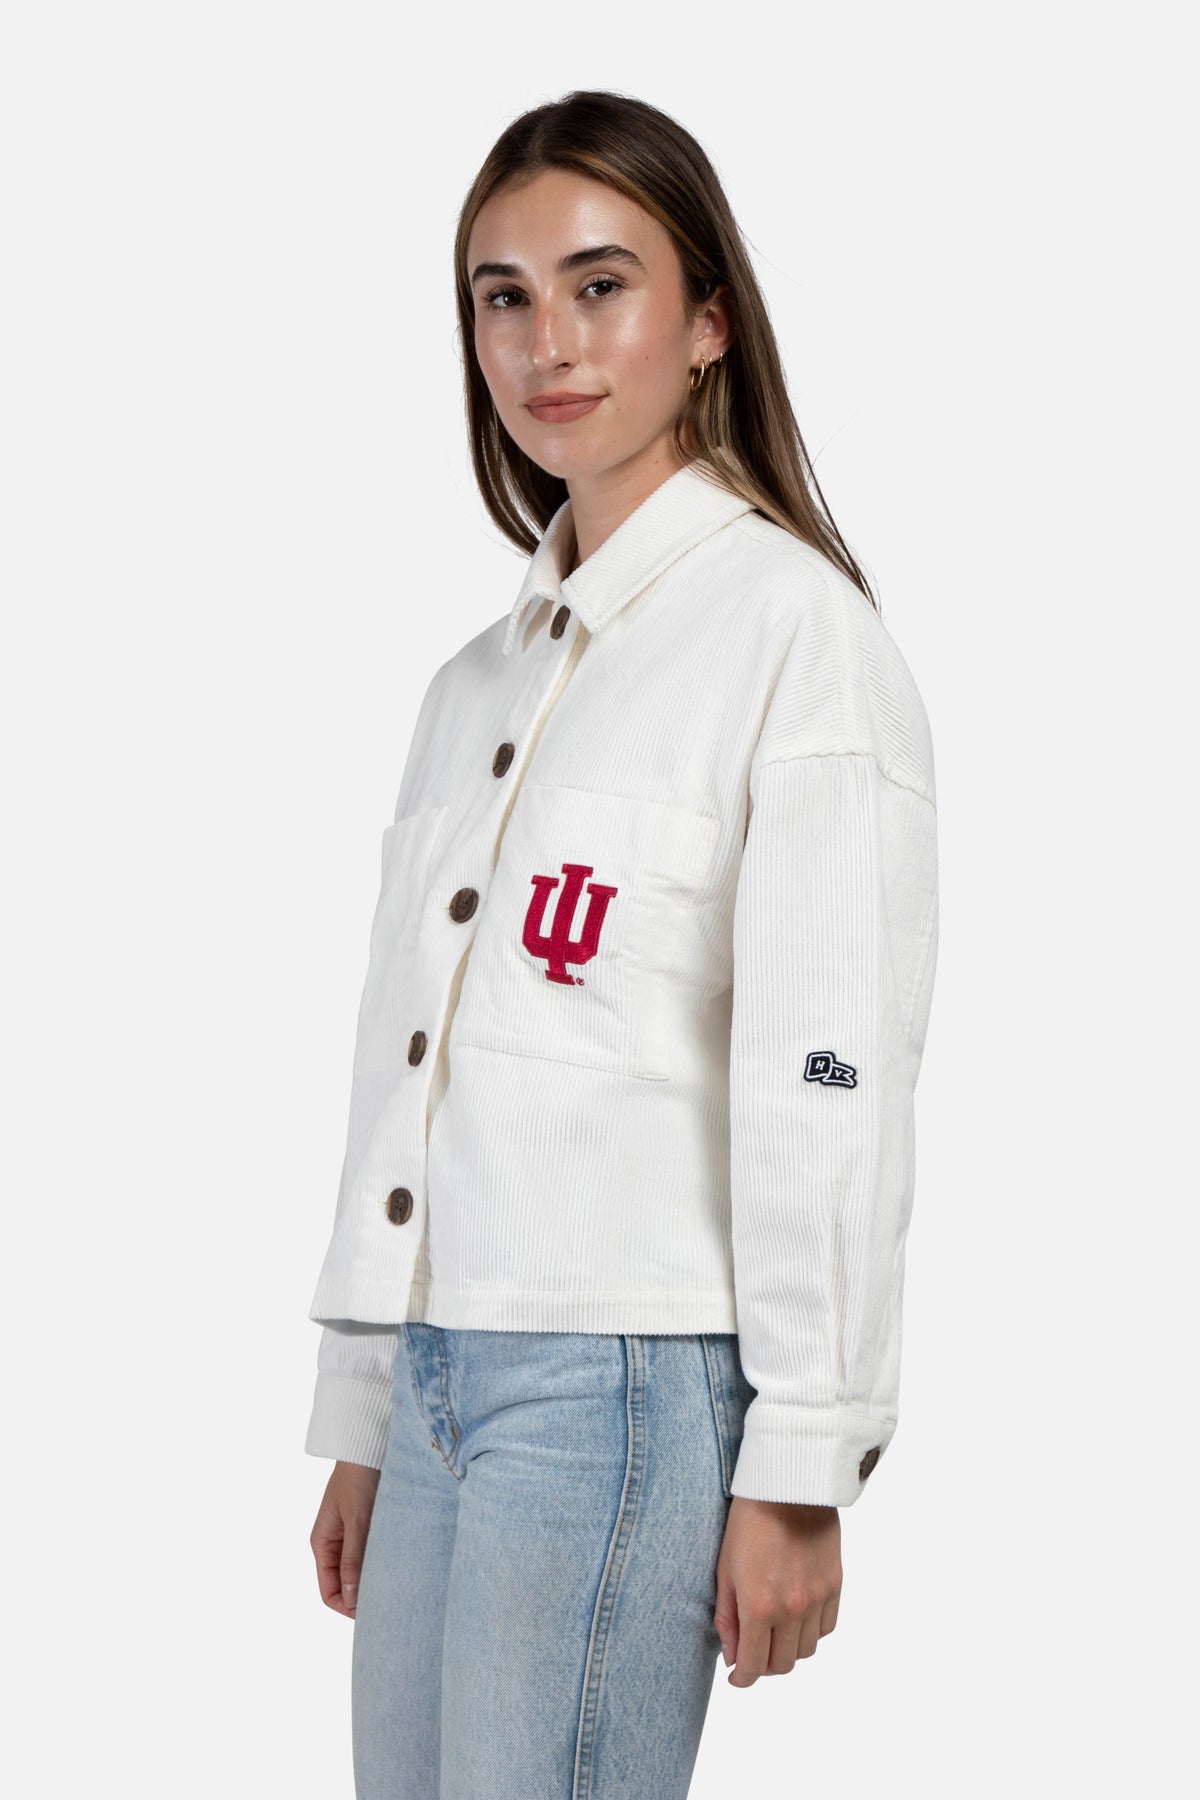 Indiana University Corded Jacket